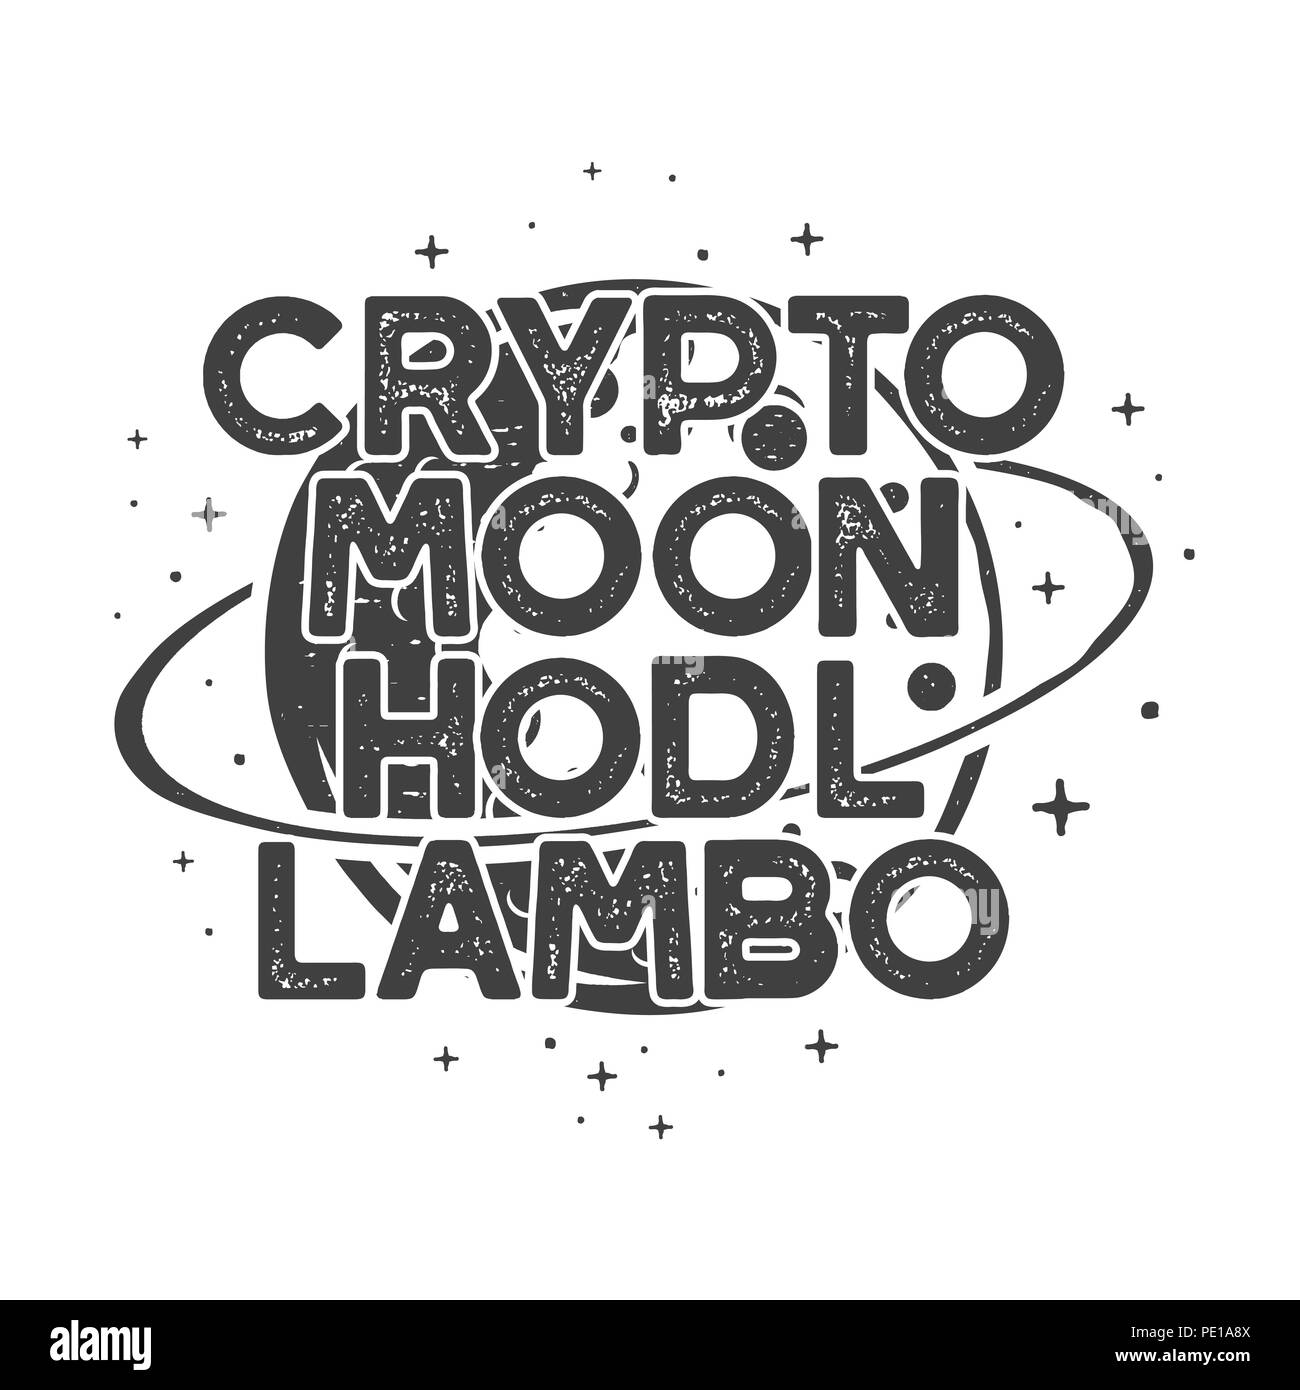 Drôle Cryptocurrency vintage T-shirt ou de l'affiche. Illustration de l'orbite lunaire rétro avec des devises différentes et drôles de mots - crypto, lune, hodl, lambo. B Banque D'Images